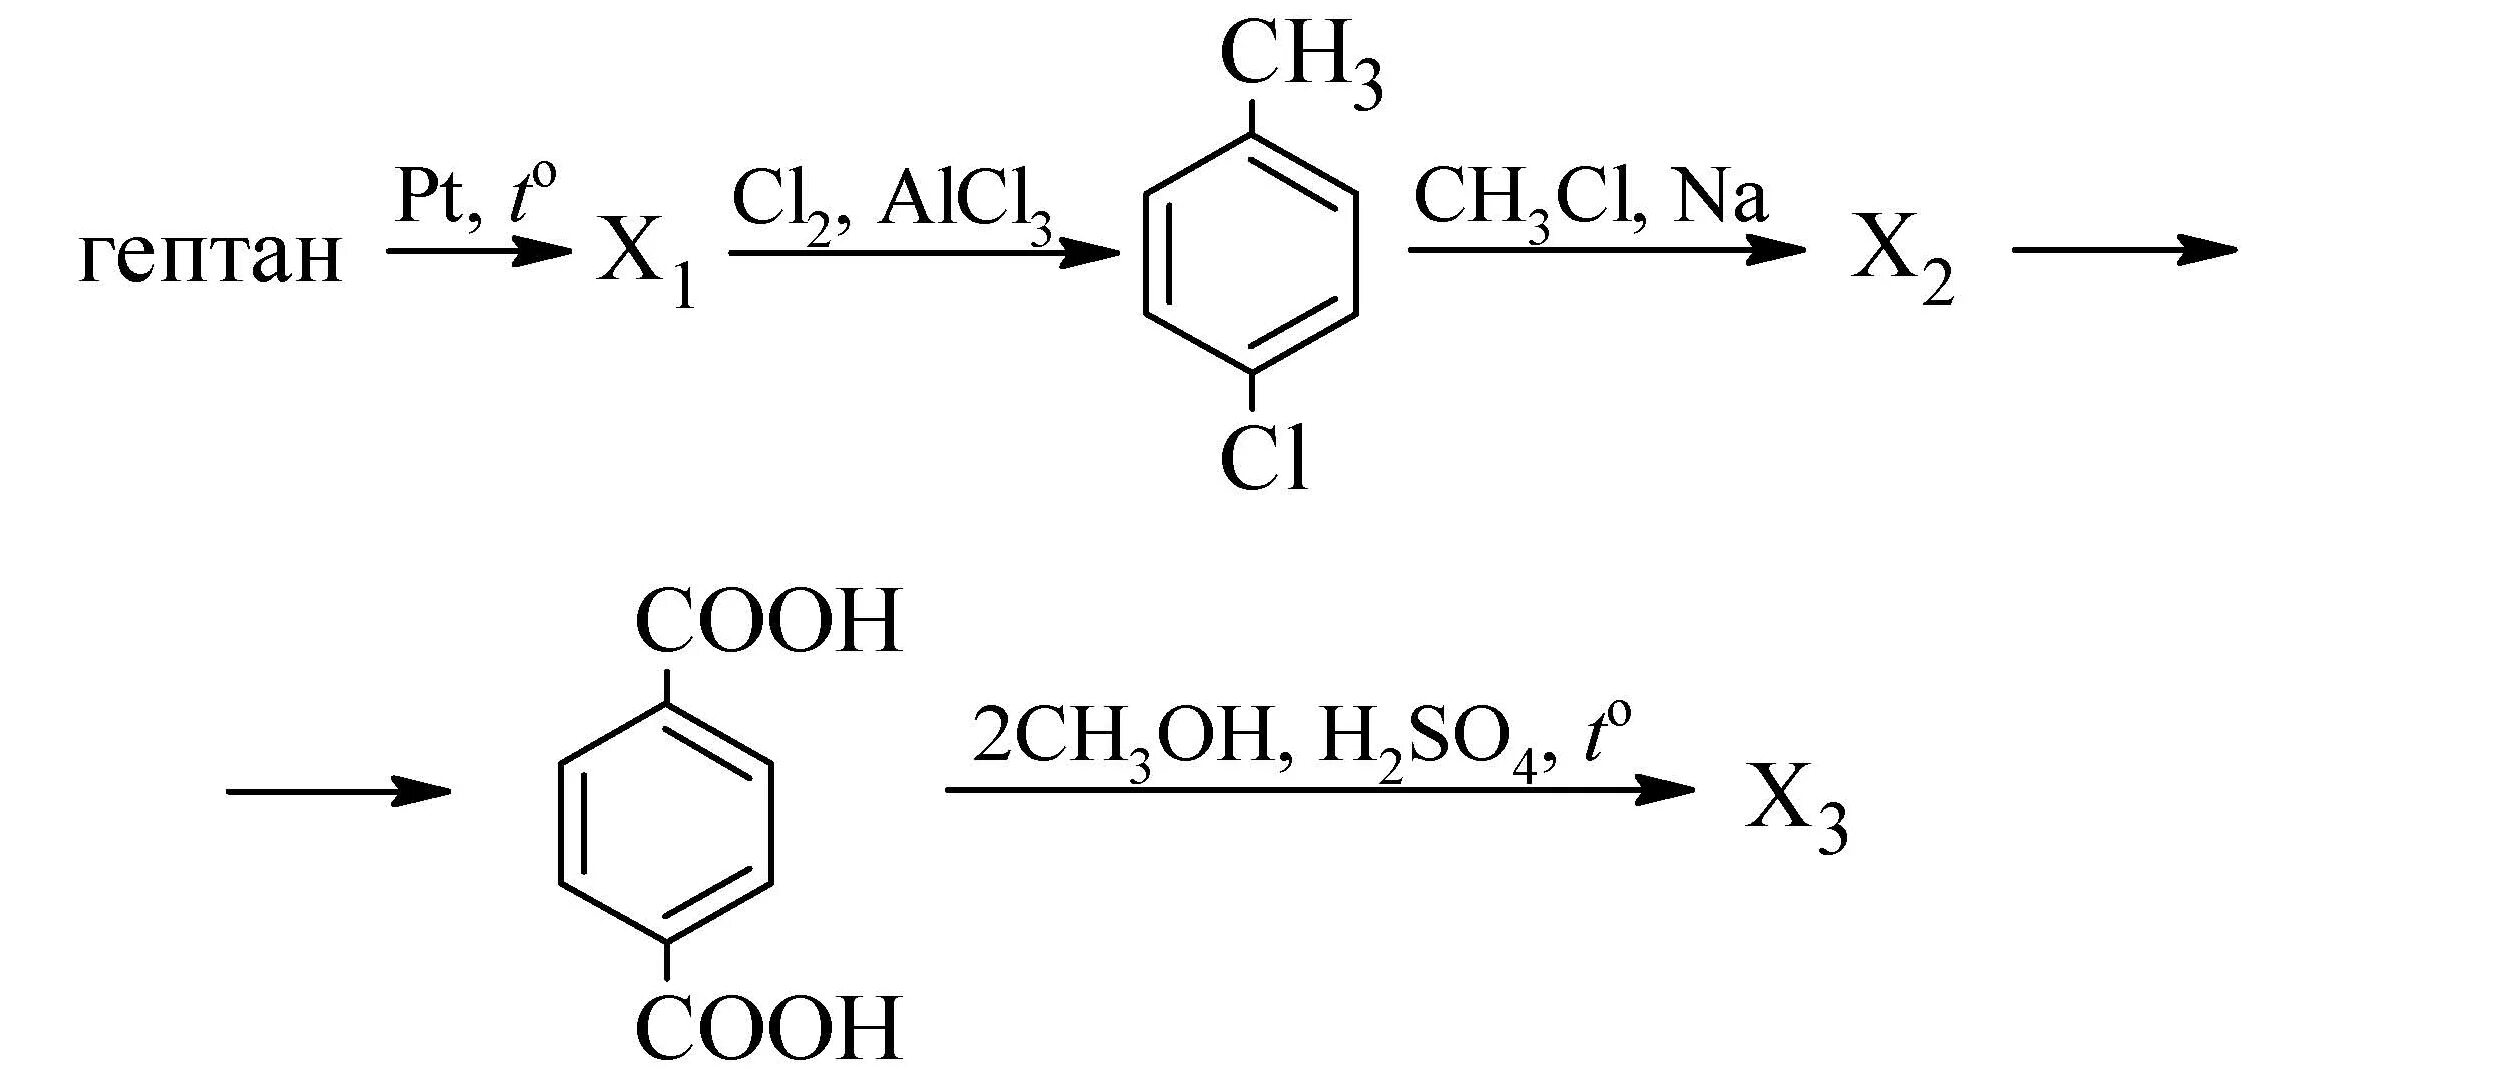 Гептан pt t реакция. Гептан pt t x1 cl2. Цепочки реакций бензол. Цепочки превращения органических веществ.